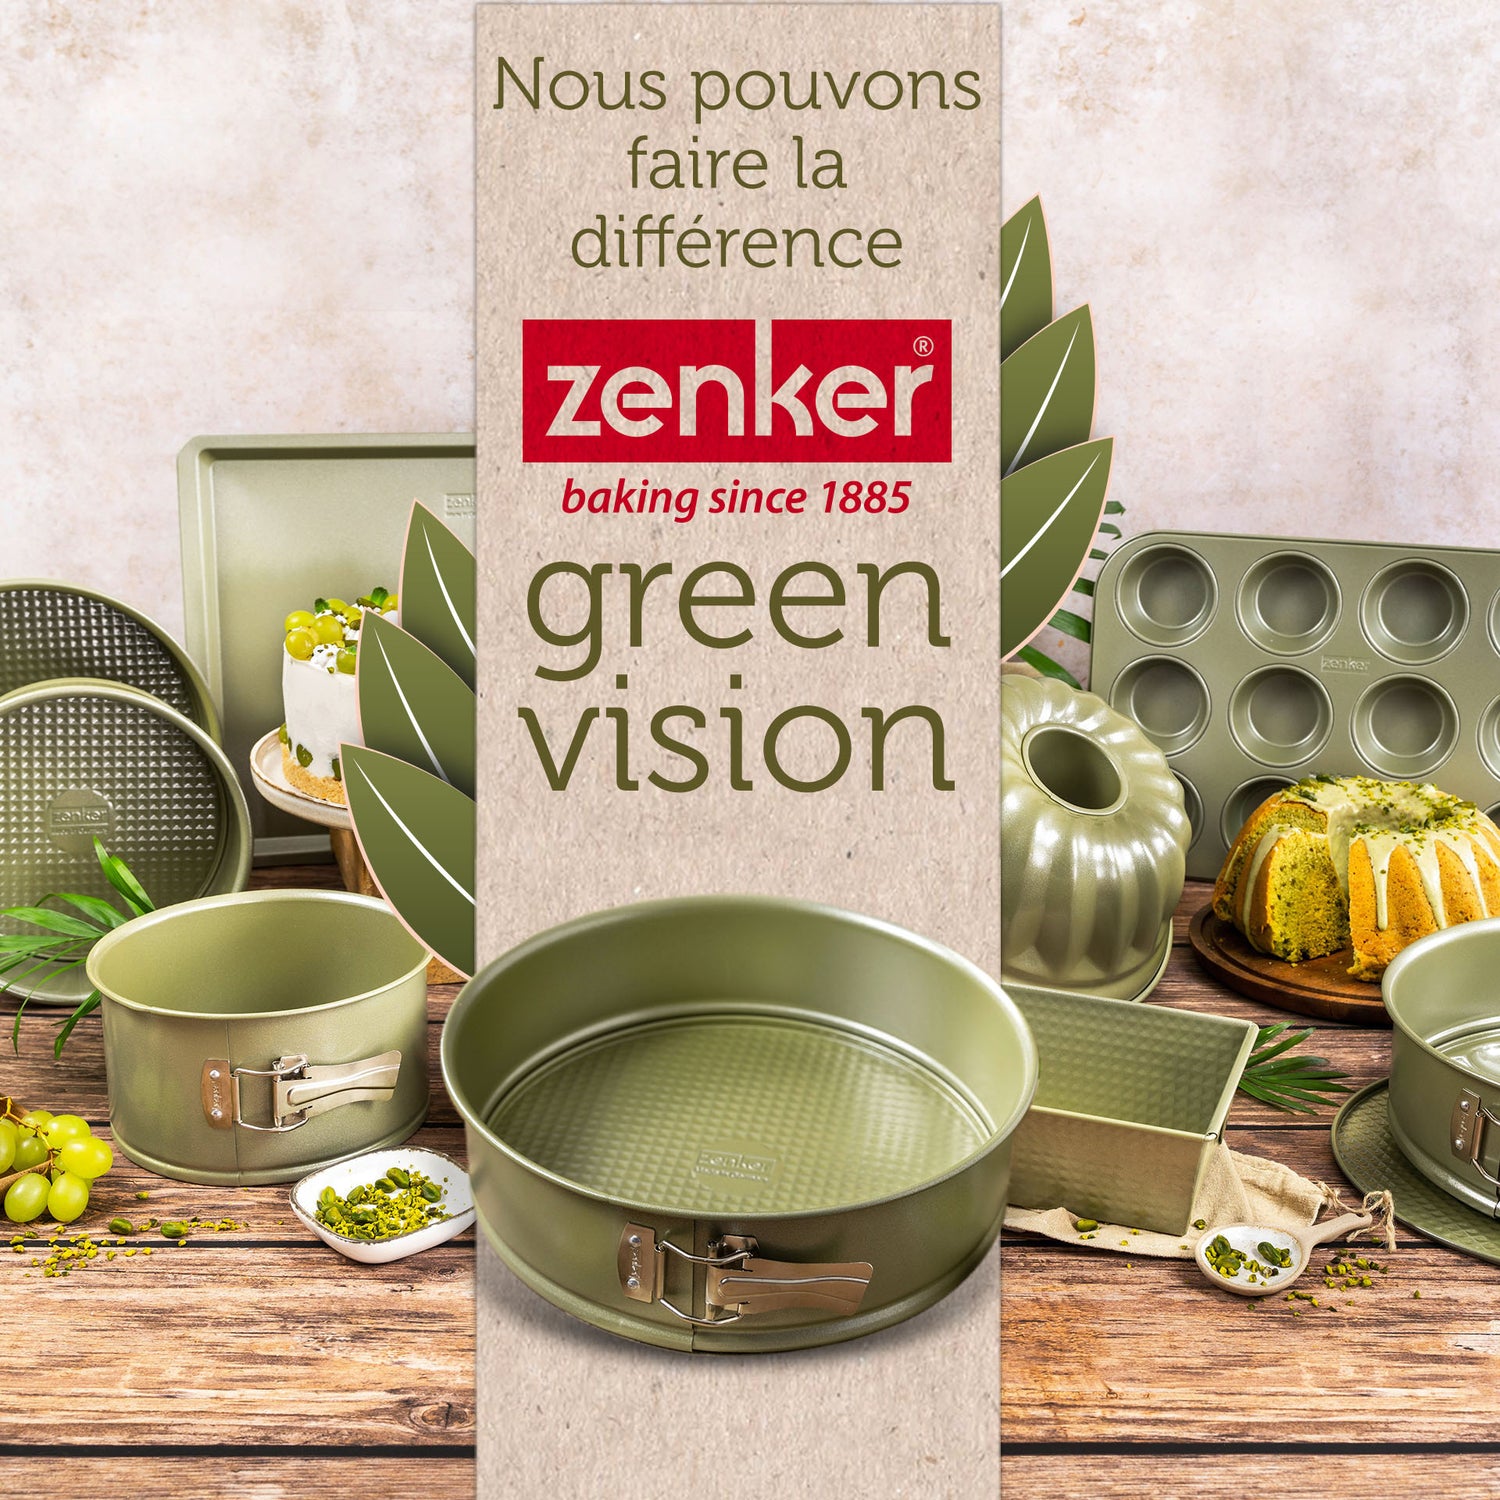 Plaque à pâtisserie éco-responsable 42 x 32 cm Zenker Green Vision